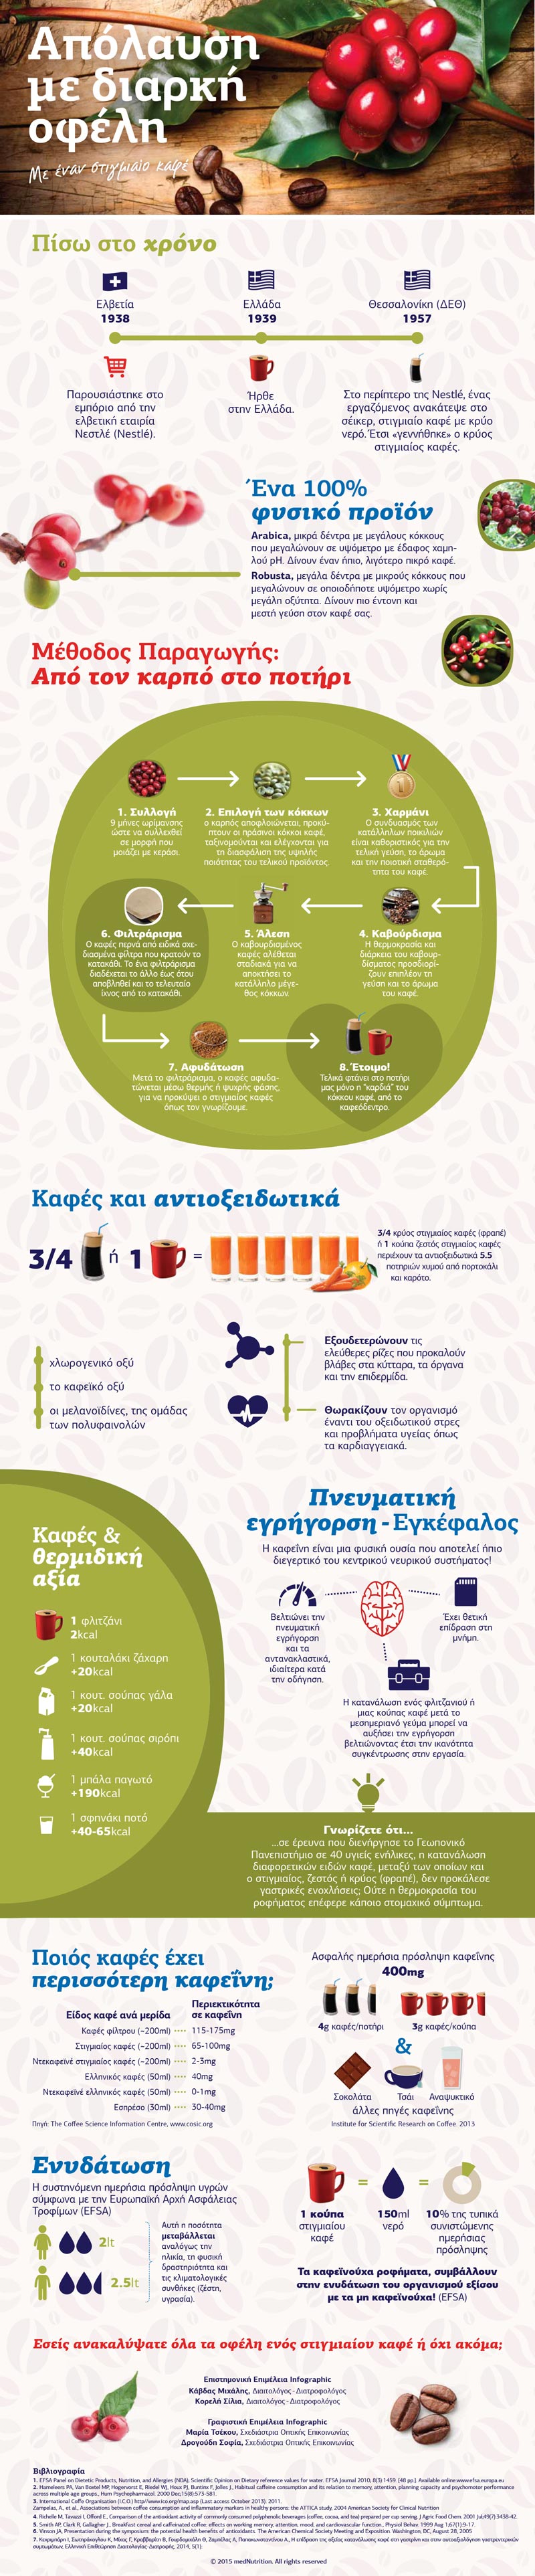 infographic stigmiaiou kafe